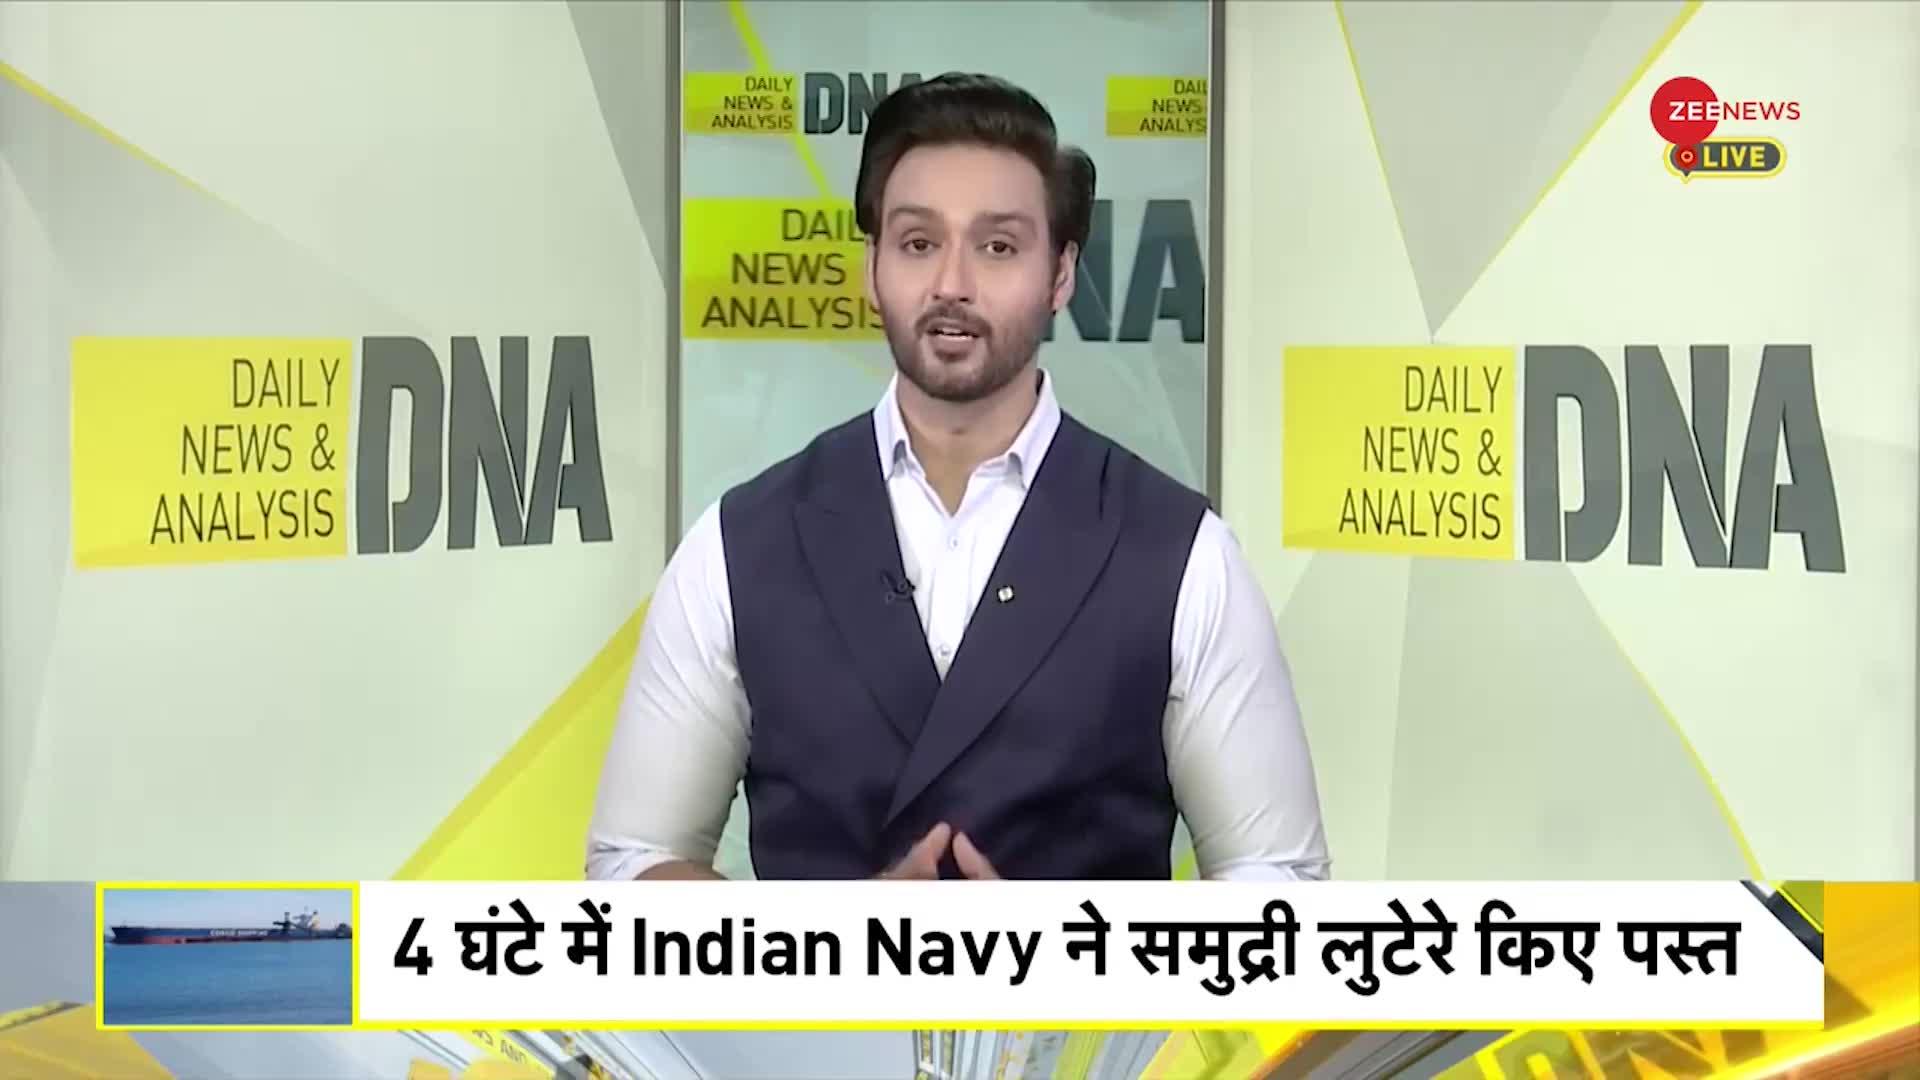 15 Indians Rescued Somalia Hijacked Ship: 4 घंटे में Indian Navy ने समुद्री लुटेरे किए पस्त